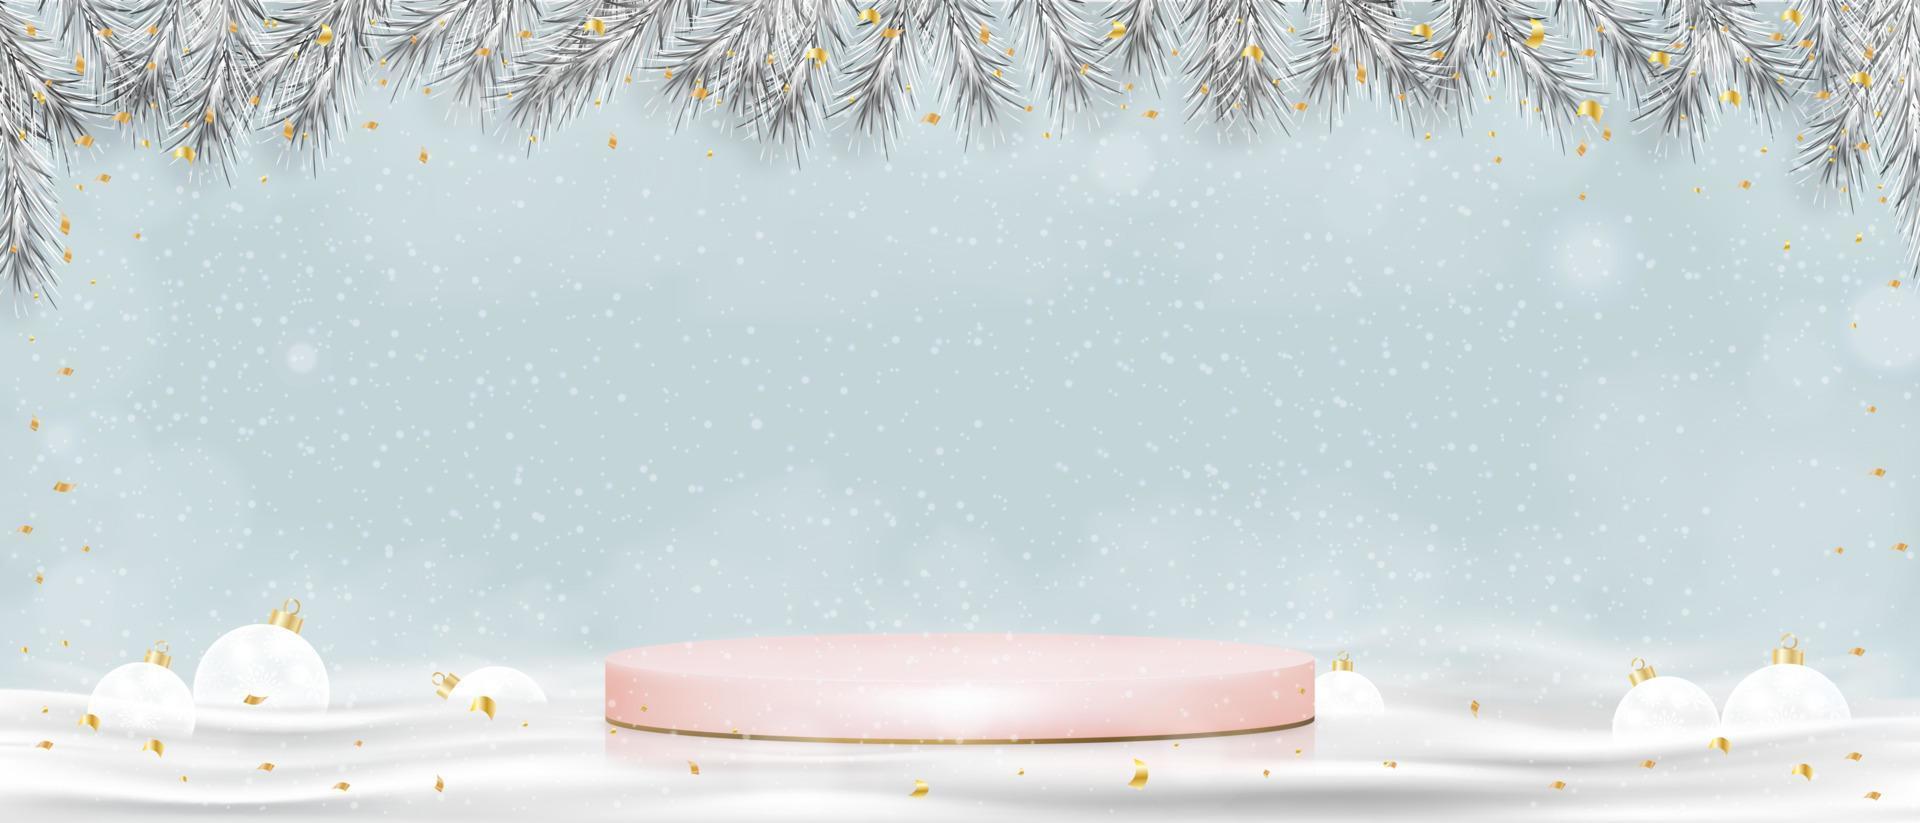 fundo de natal com cena de inverno, pódio rosa de exibição 3d com decoração de natal, suporte de vitrine vetorial com nevando no fundo da parede do céu azul, design de luxo para o ano novo de 2023 vetor